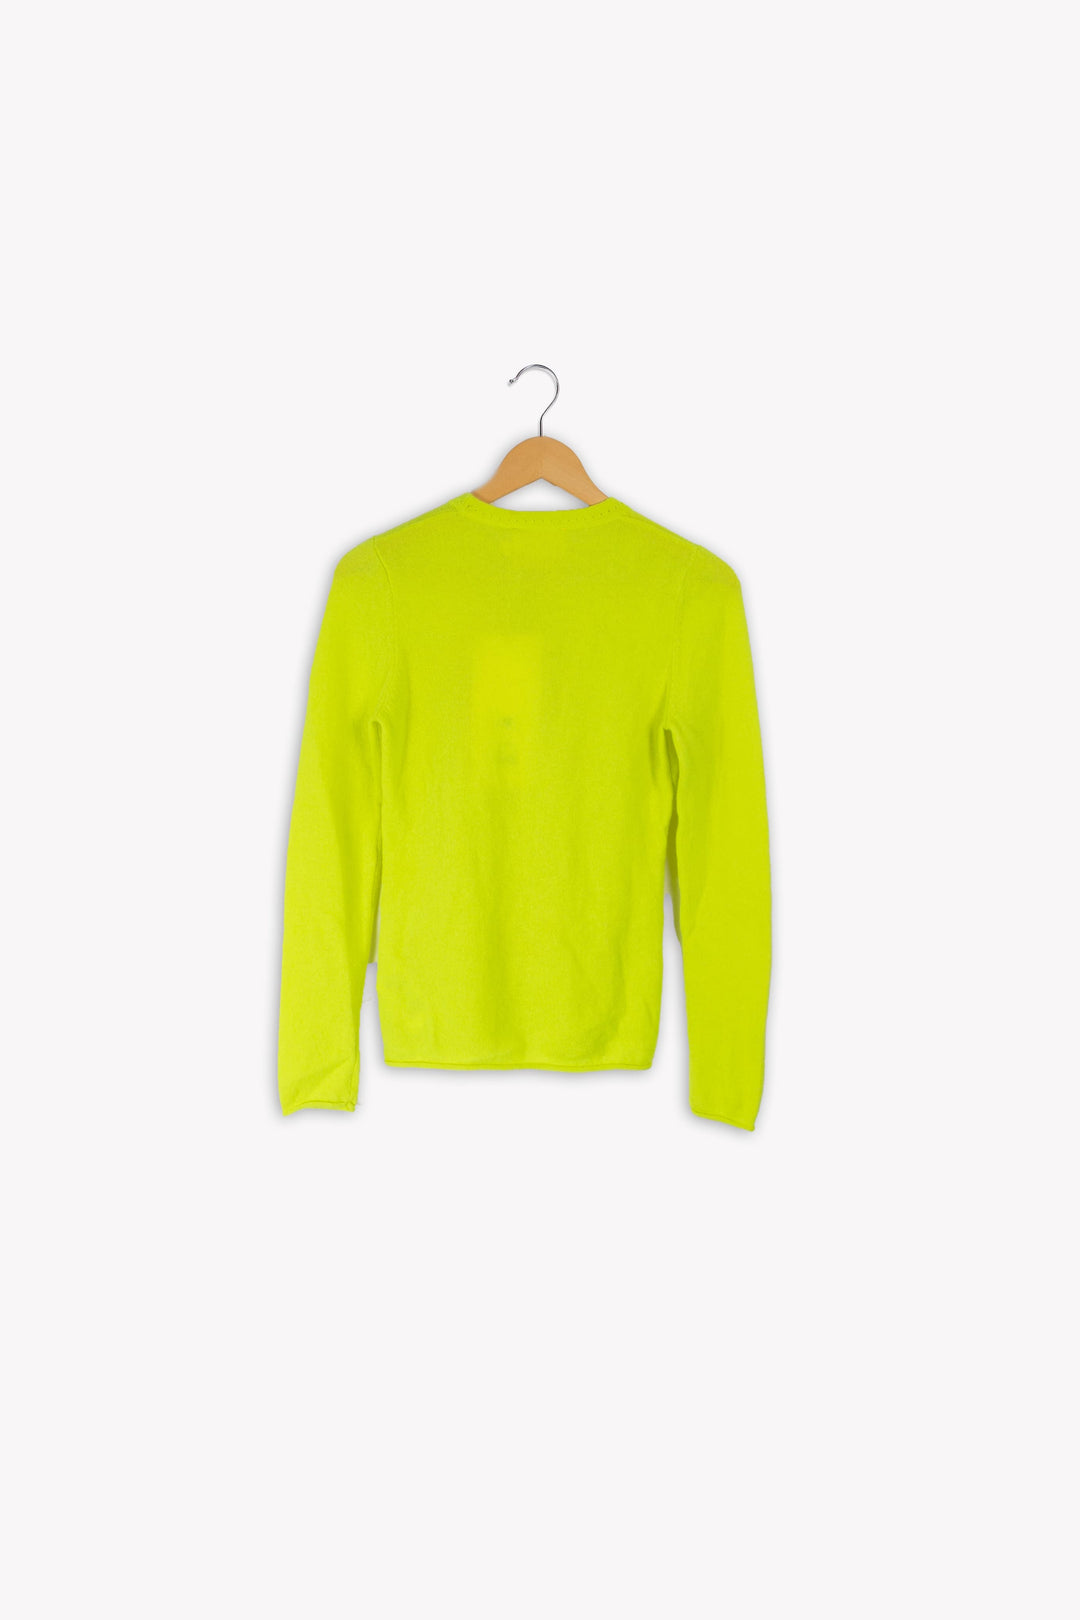 Neon yellow sweater - S